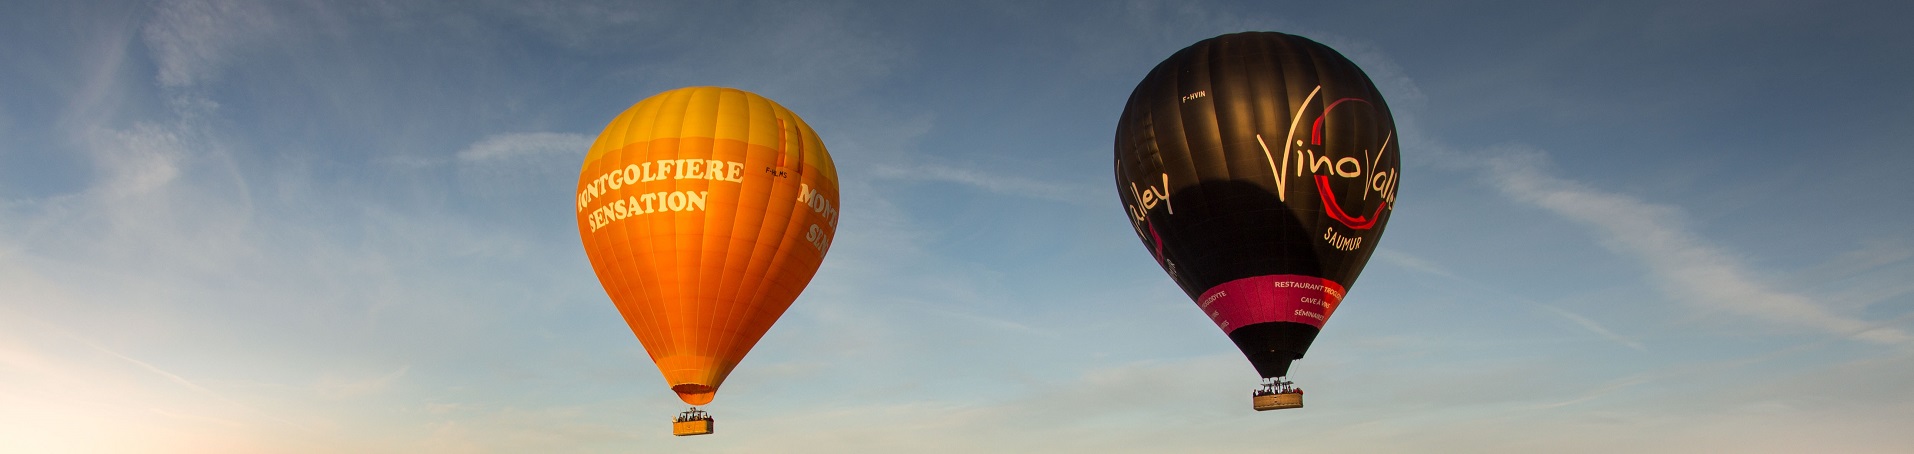 deux montgolfières en vol